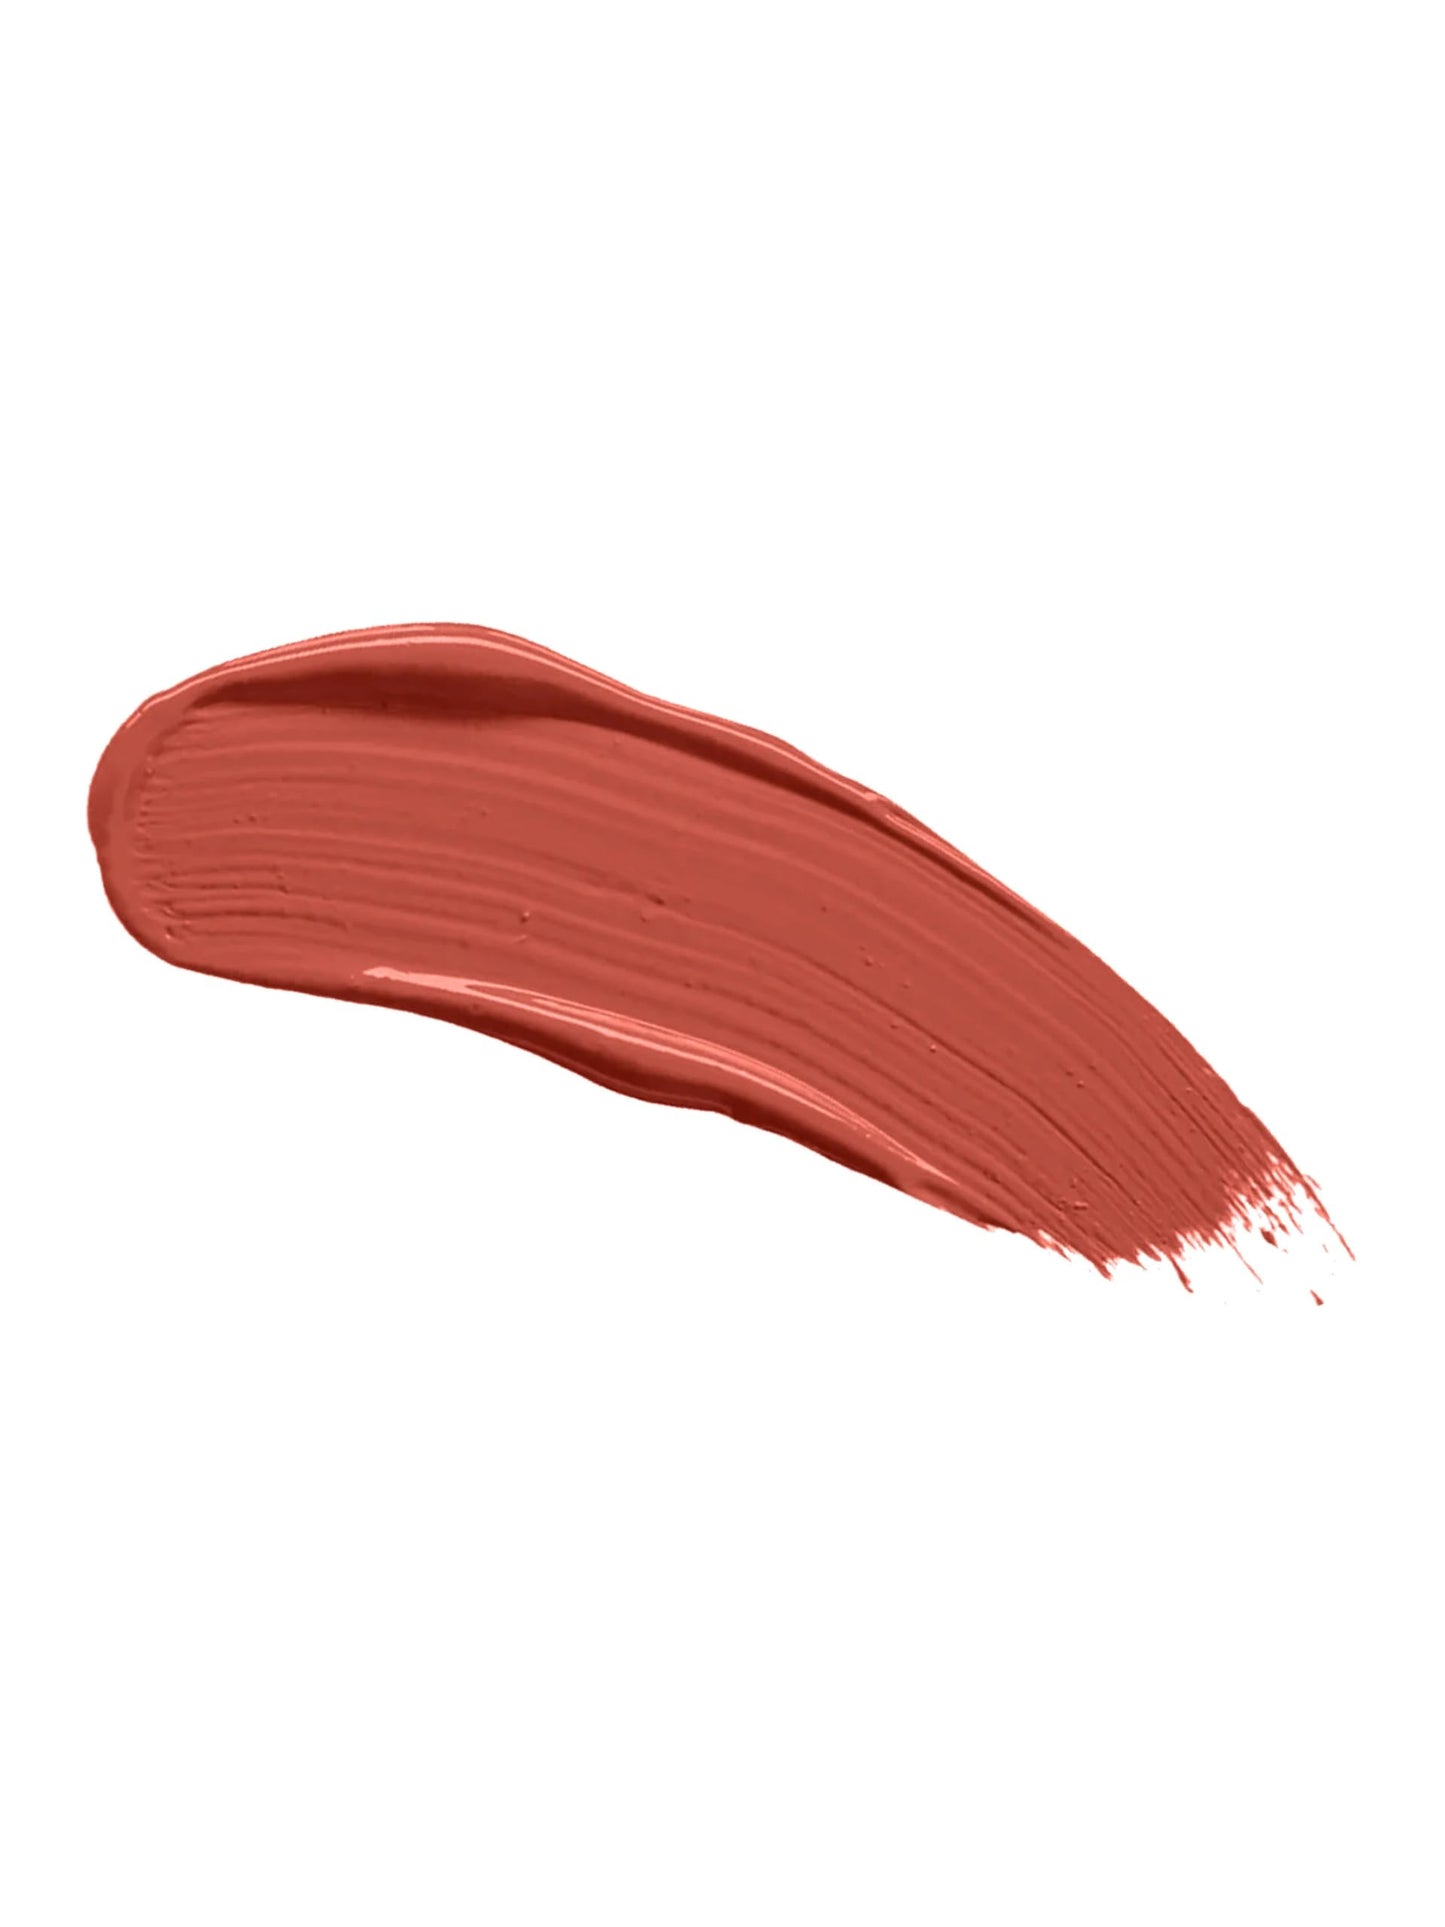 Recode Lip Smacker Liquid Lipstick - 3ml | Shade - 03  from recode